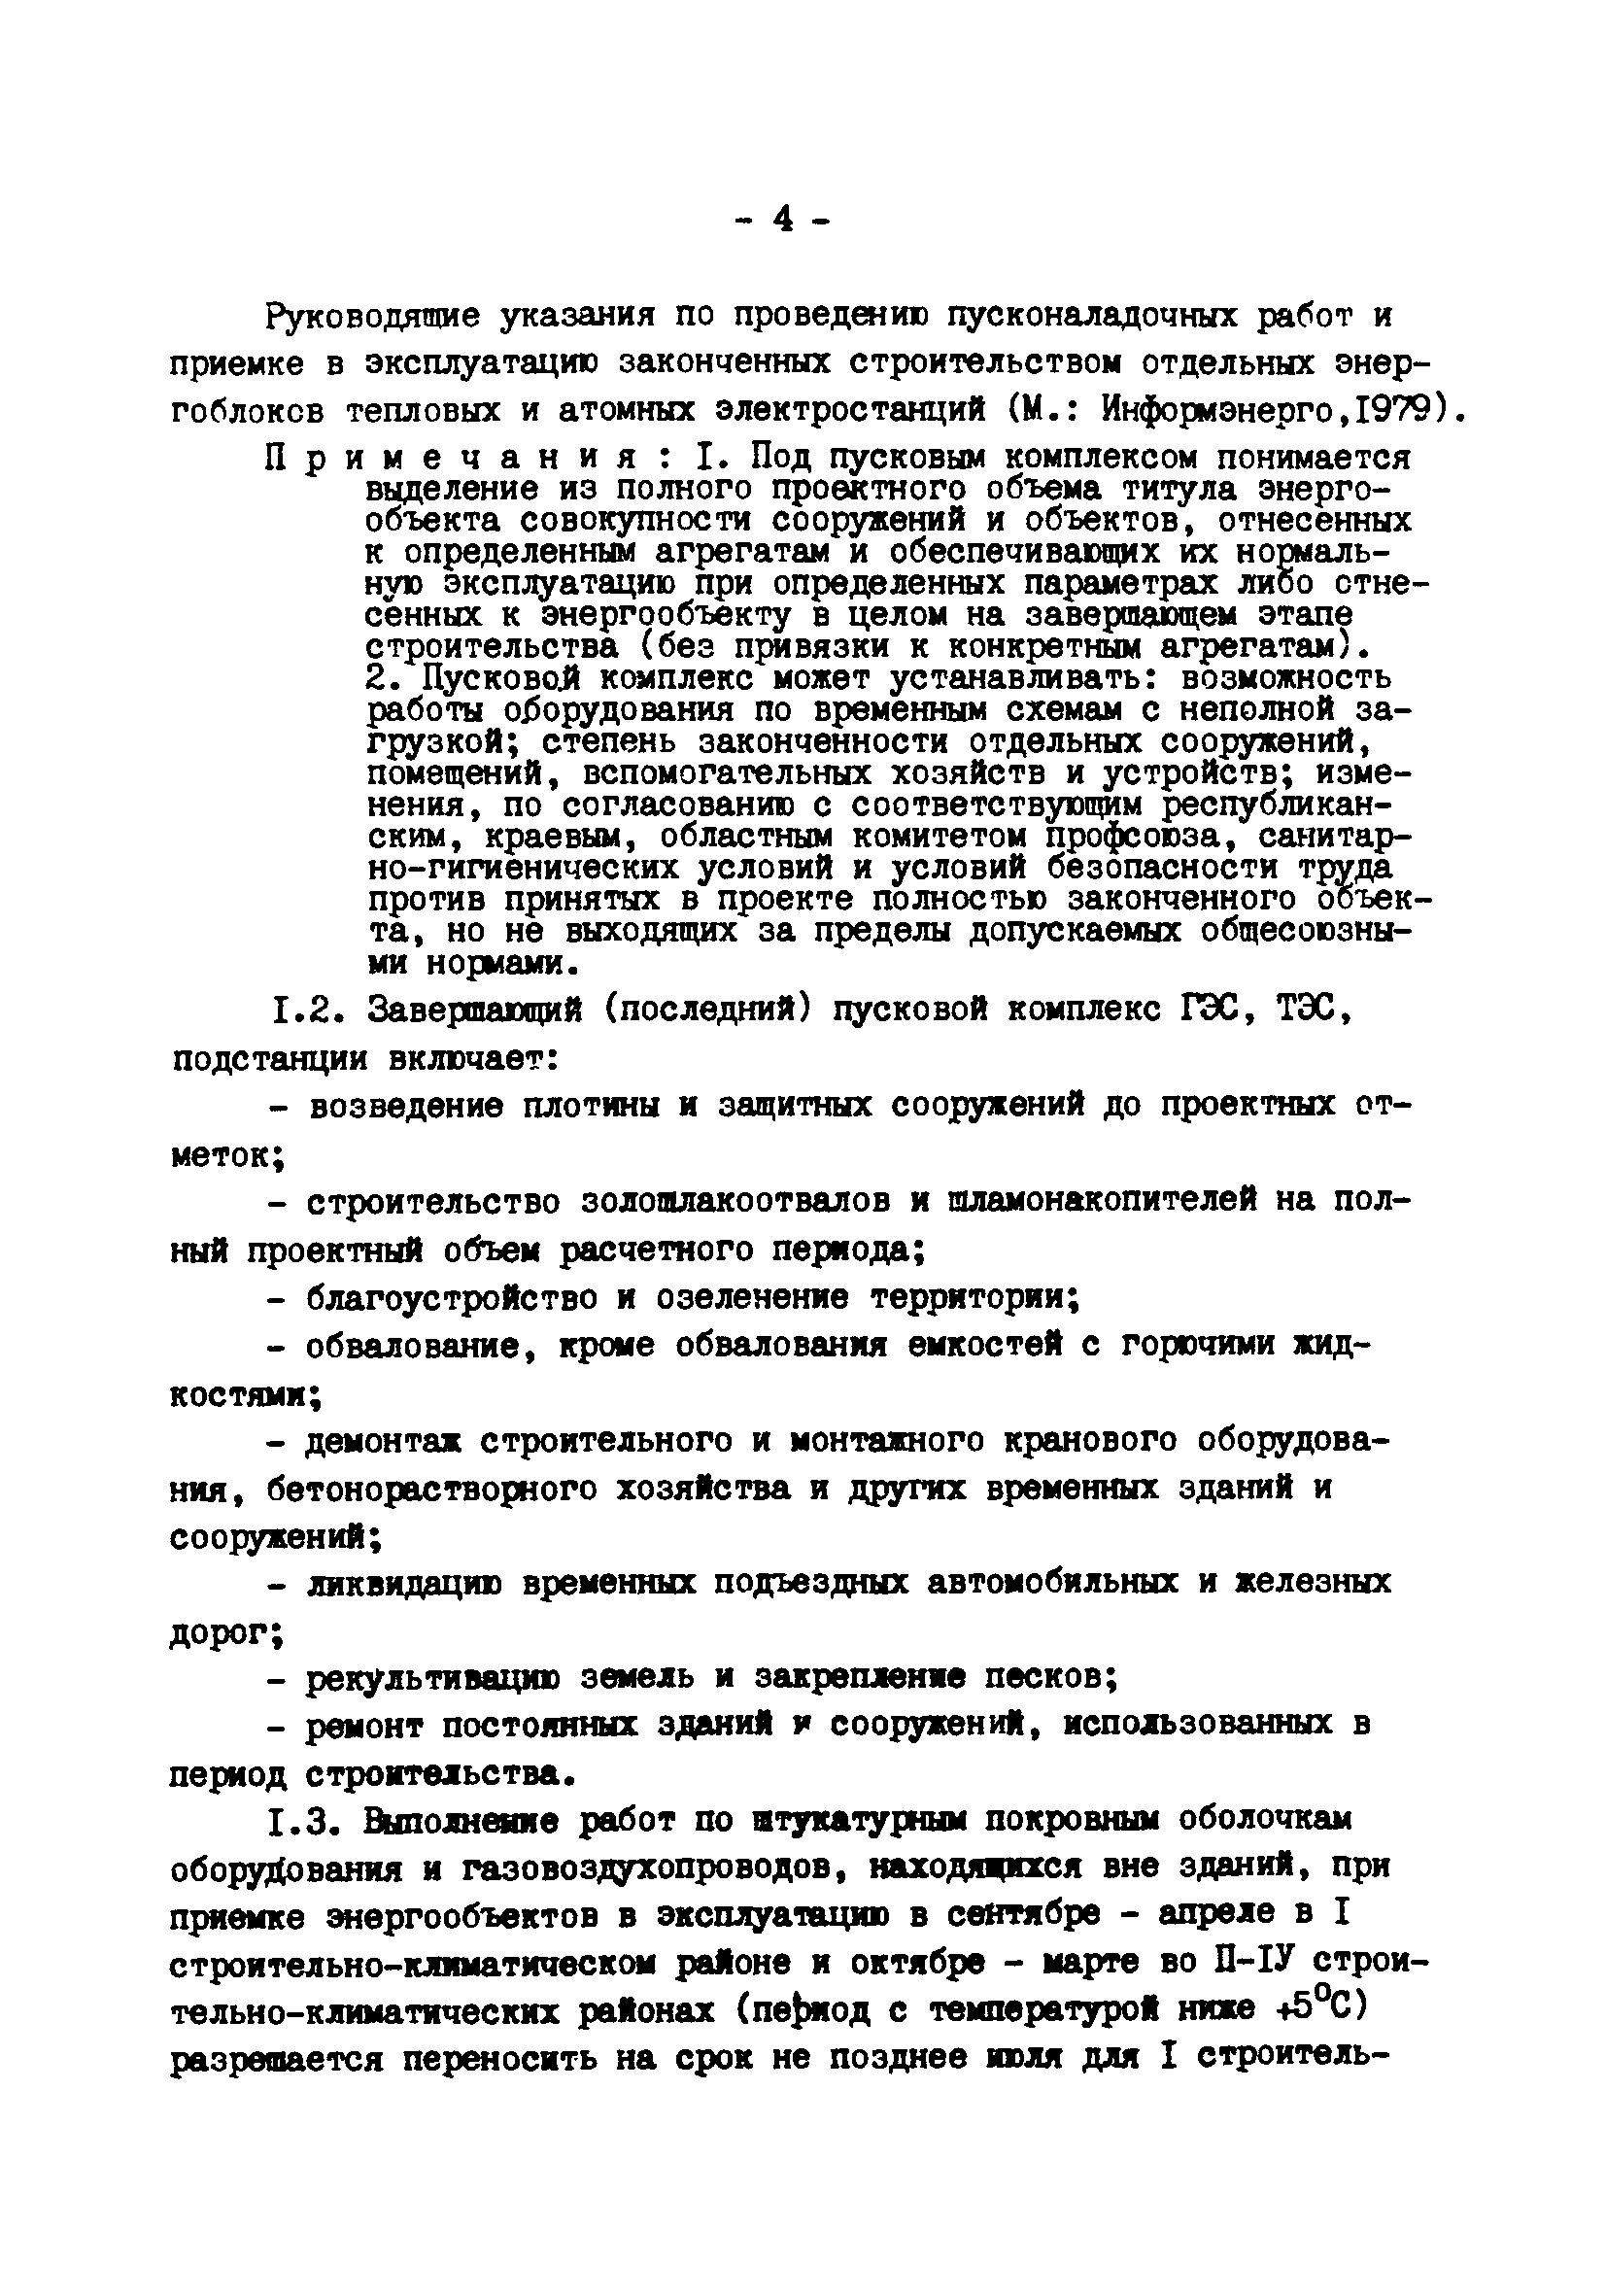 ВСН 37-86/Минэнерго СССР